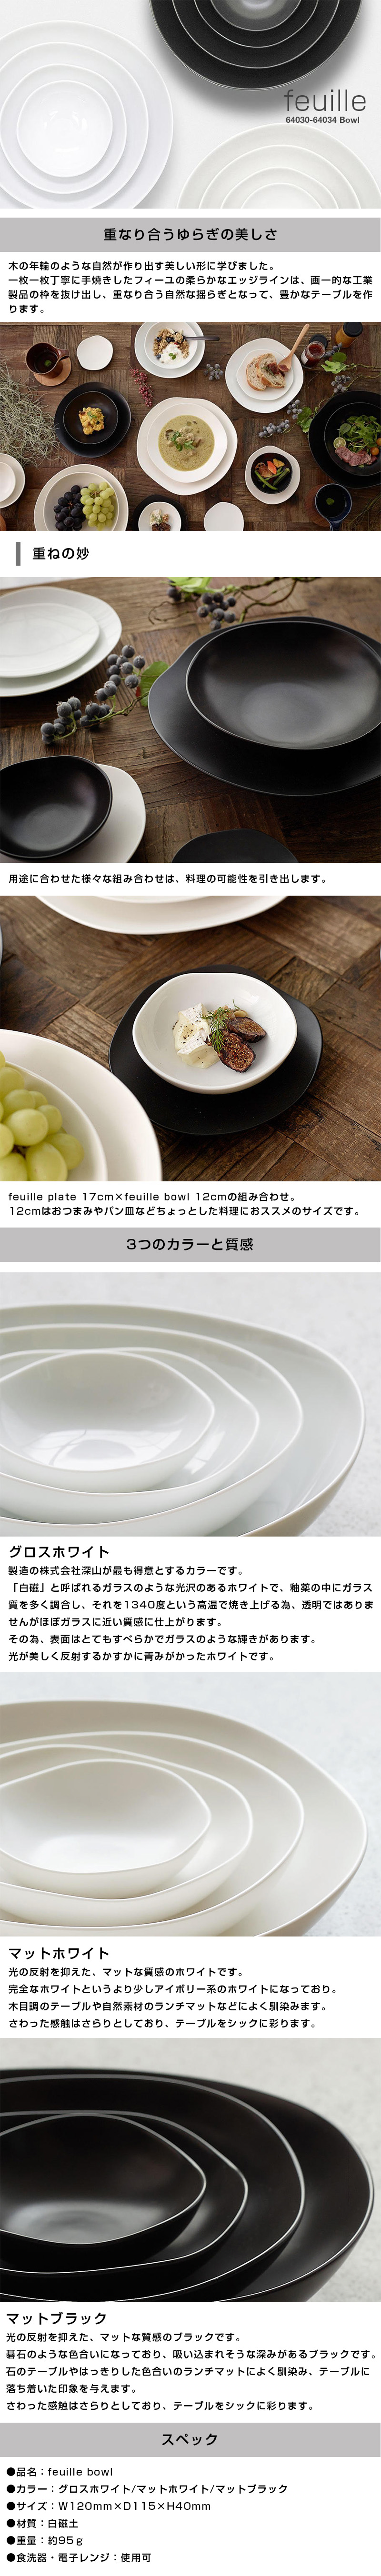 フィーユボウル feuille bowl 12cmのLP一枚画像。feuille bowl！ ●重なり合うゆらぎの美しさ。：木の年輪のような自然が作り出す美しい形に学びました。一枚一枚丁寧に手焼きしたフィーユの柔らかなエッジラインは、画一的な工業製品の枠を抜け出し、重なり合う自然な揺らぎとなって、豊かなテーブルを作ります。 ・重ねの妙：用途に合わせた様々な組み合わせは、料理の可能性を引き出します。feuille plate 17cm×feuille bowl 12cmの組み合わせ。12cmはおつまみやパン皿などちょっとした料理におススメのサイズです。 ●3つのカラーと質感。：・グロスホワイト/製造の株式会社深山が最も得意とするカラーです。「白磁」と呼ばれるガラスのような光沢のあるホワイトで、釉薬の中にガラス質を多く調合し、それを1340度という高温で焼き上げる為、透明ではありませんがほぼガラスに近い質感に仕上がります。その為、表面はとてもすべらかでガラスのような輝きがあります。光が美しく反射するかすかに青みがかったホワイトです。 ・マットホワイト/光の反射を抑えた、マットな質感のホワイトです。完全なホワイトというより少しアイボリー系のホワイトになっており。木目調のテーブルや自然素材のランチマットなどによく馴染みます。さわった感触はさらりとしており、テーブルをシックに彩ります。 ・マットブラック/光の反射を抑えた、マットな質感のブラックです。碁石のような色合いになっており、吸い込まれそうな深みがあるブラックです。石のテーブルやはっきりした色合いのランチマットによく馴染み、テーブルに落ち着いた印象を与えます。 ●スペック：・品名/feuille bowl ・カラー/グロスホワイト、マットホワイト、マットブラック ・サイズ/W120mm×D115×H40mm ・材質/白磁土 ・重量/約95g ・食洗器、電子レンジ/使用可